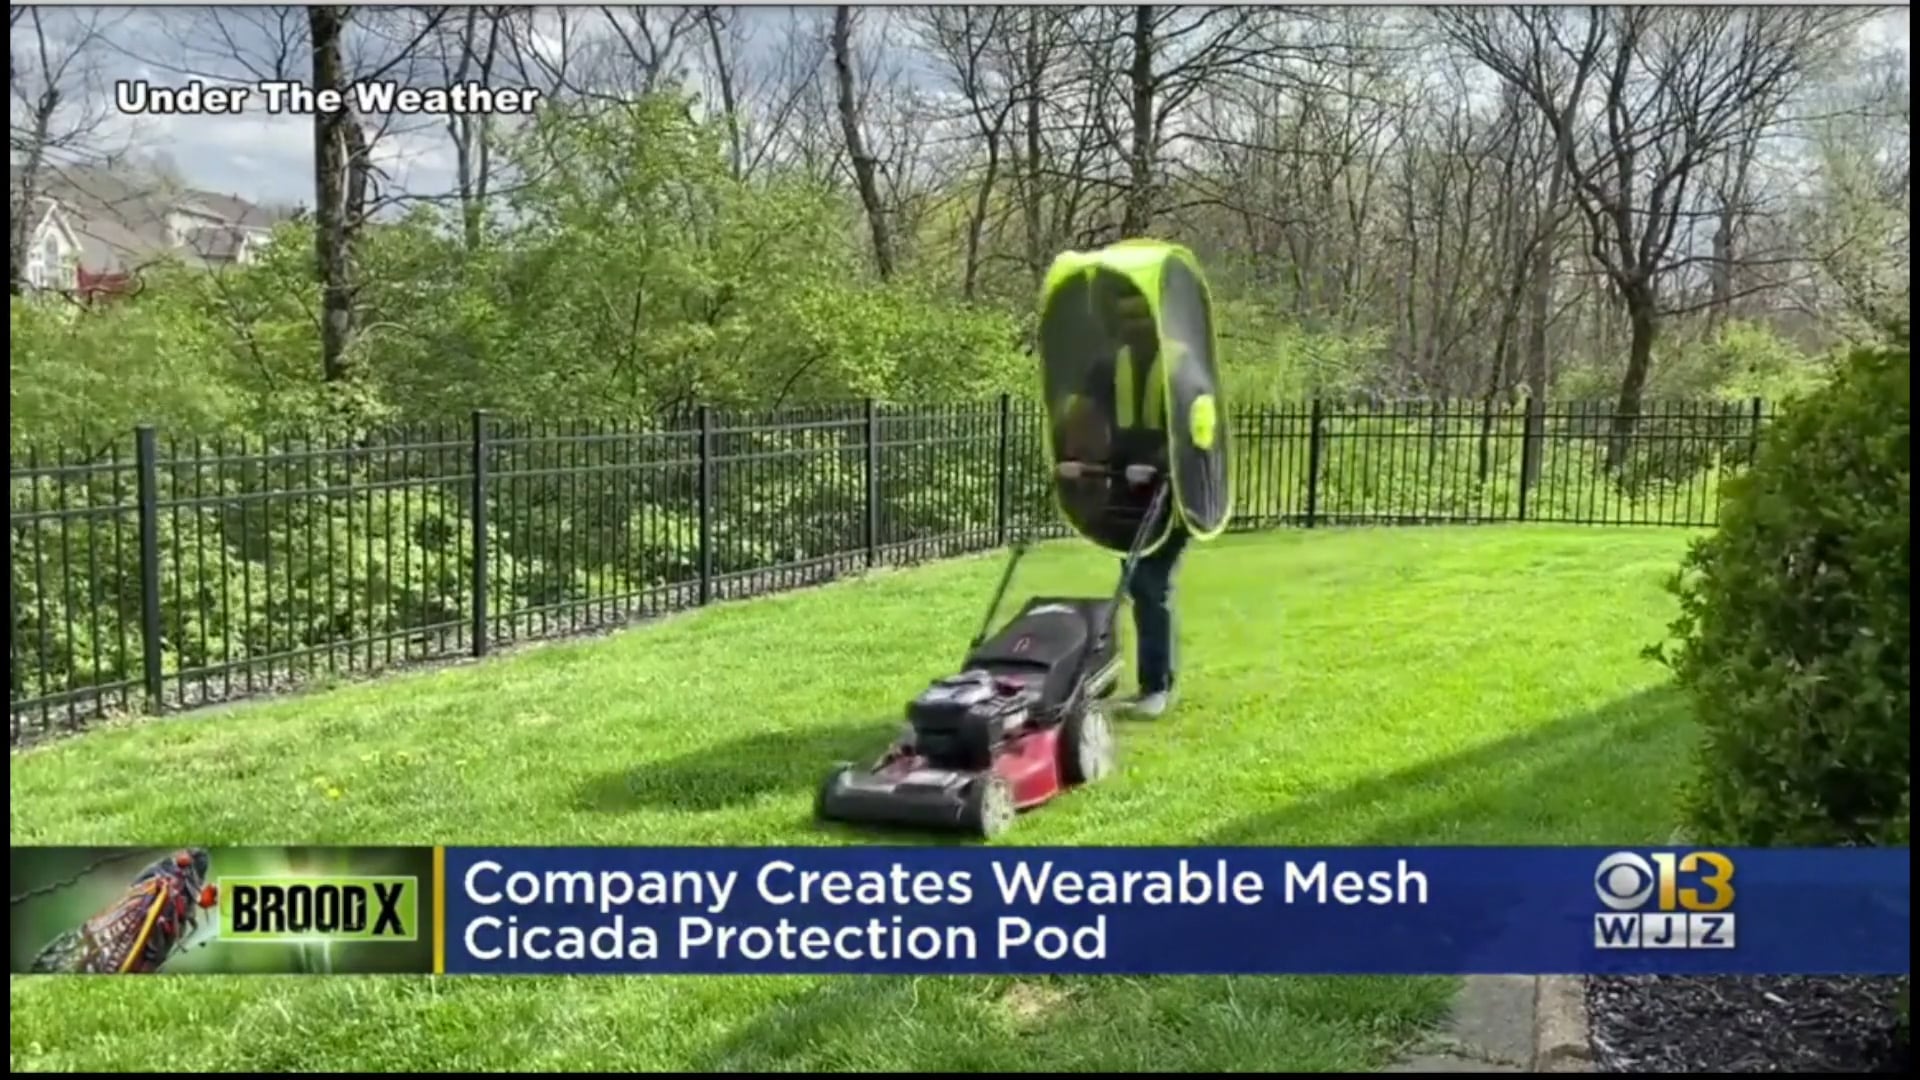 WJZ-TV CBS 13 Baltimore: Company Creates Wearable Mesh Cicada Protection Pod